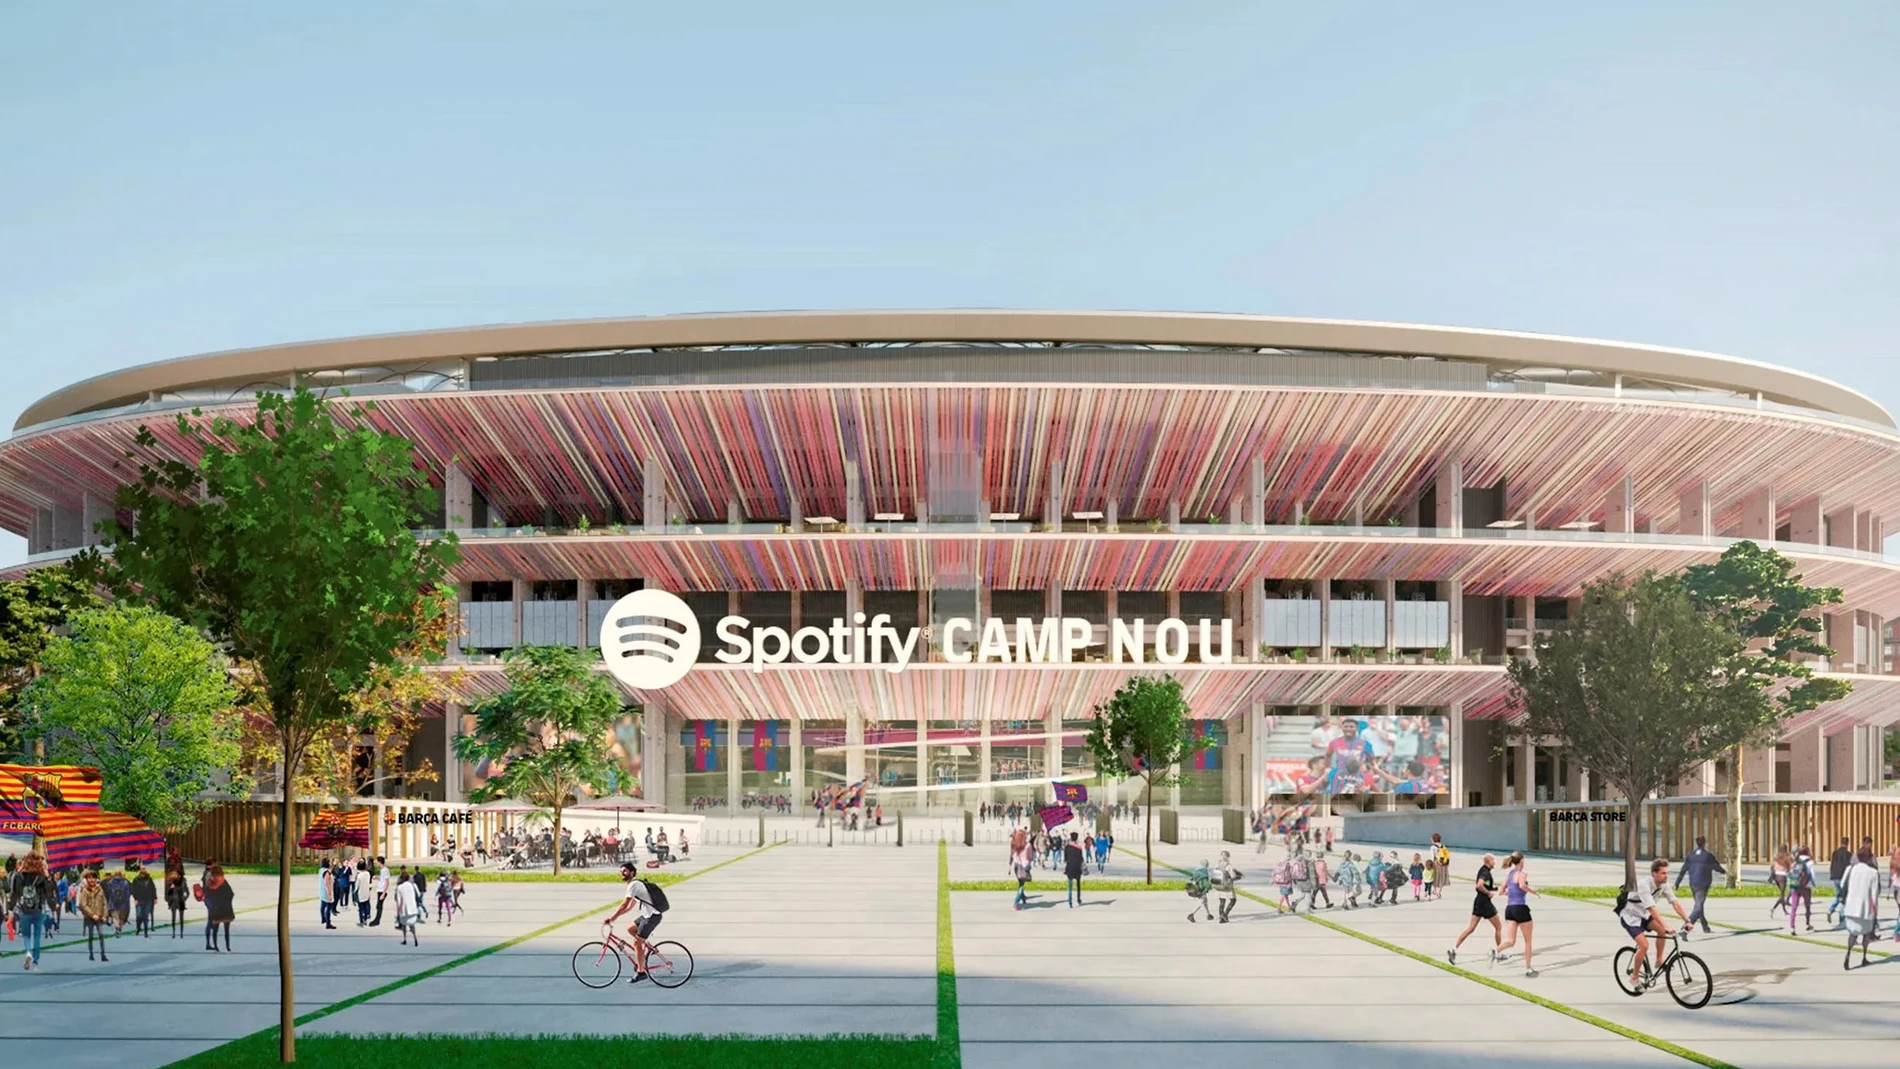 Recreación del Spotify Camp Nou, denominación del estadio a partir del próximo mes de julio